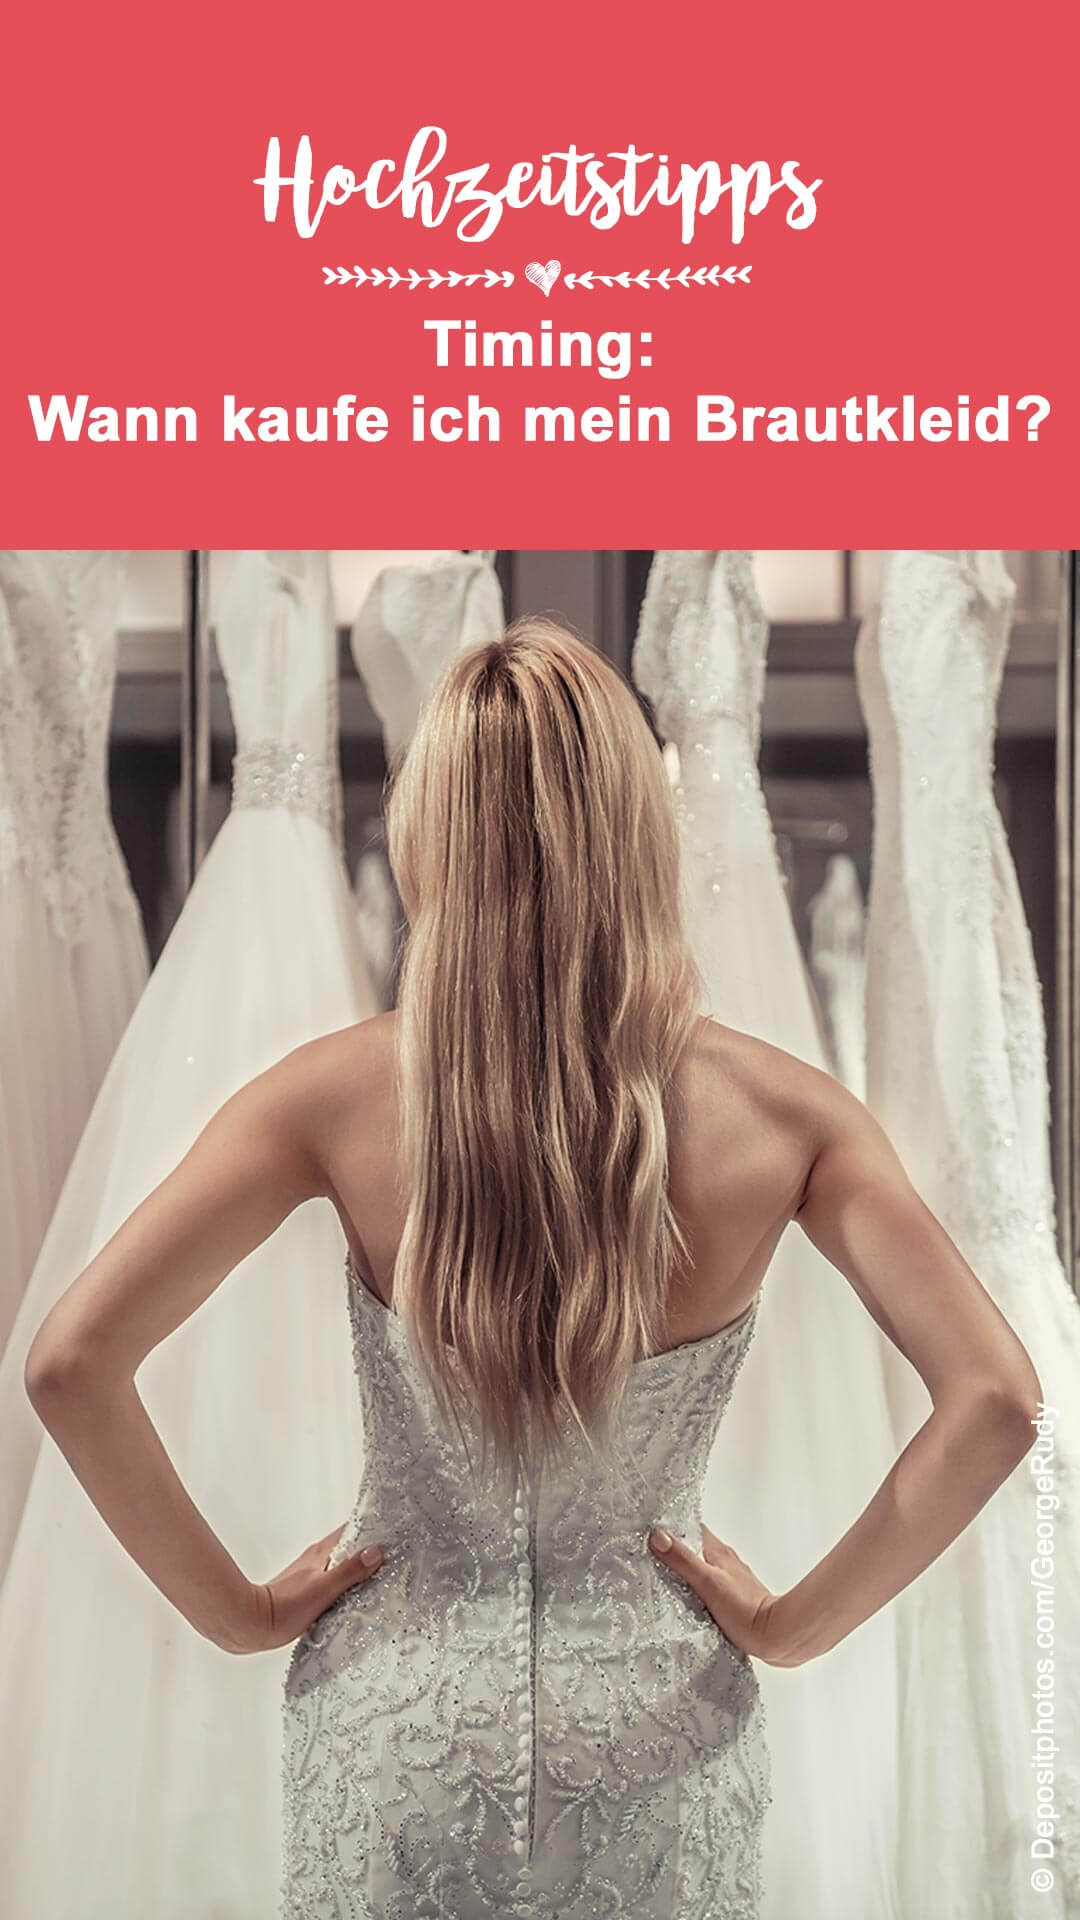 Wann sollte man ein Brautkleid kaufen?